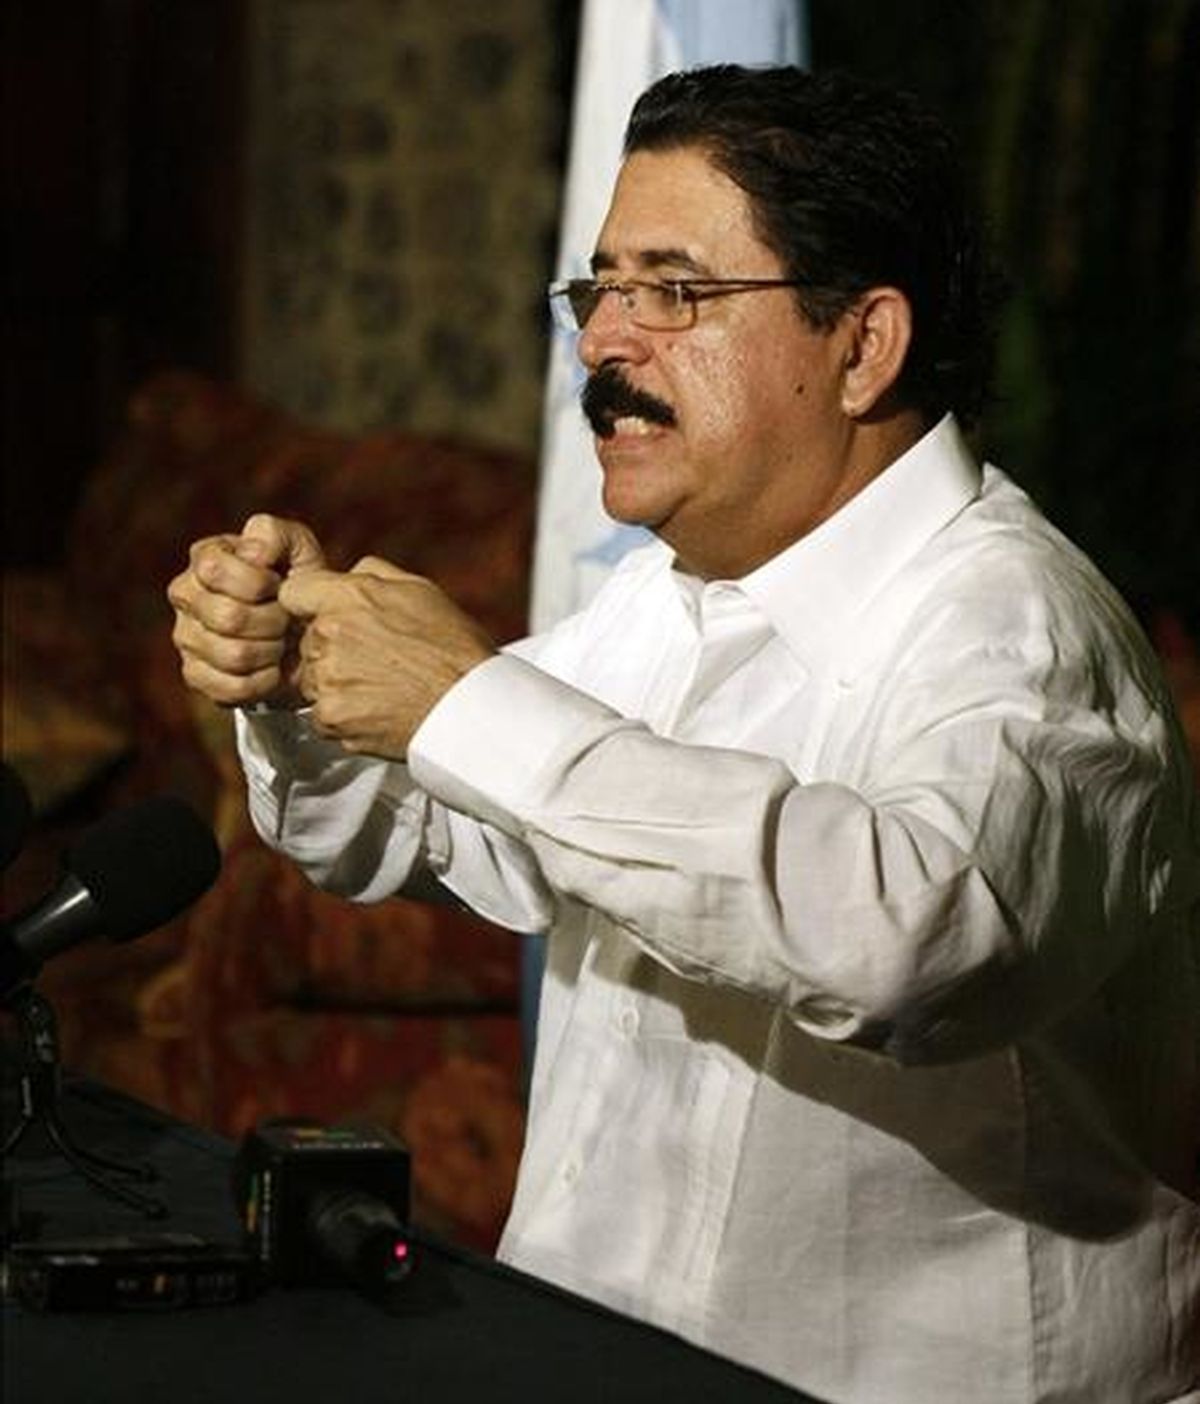 El Congreso hondureño destituyó el domingo a Zelaya (en la imagen) y nombró para reemplazarlo a su propio presidente, Roberto Micheletti, para formar un gobierno que hasta ahora no ha sido reconocido por ningún otro país. EFE